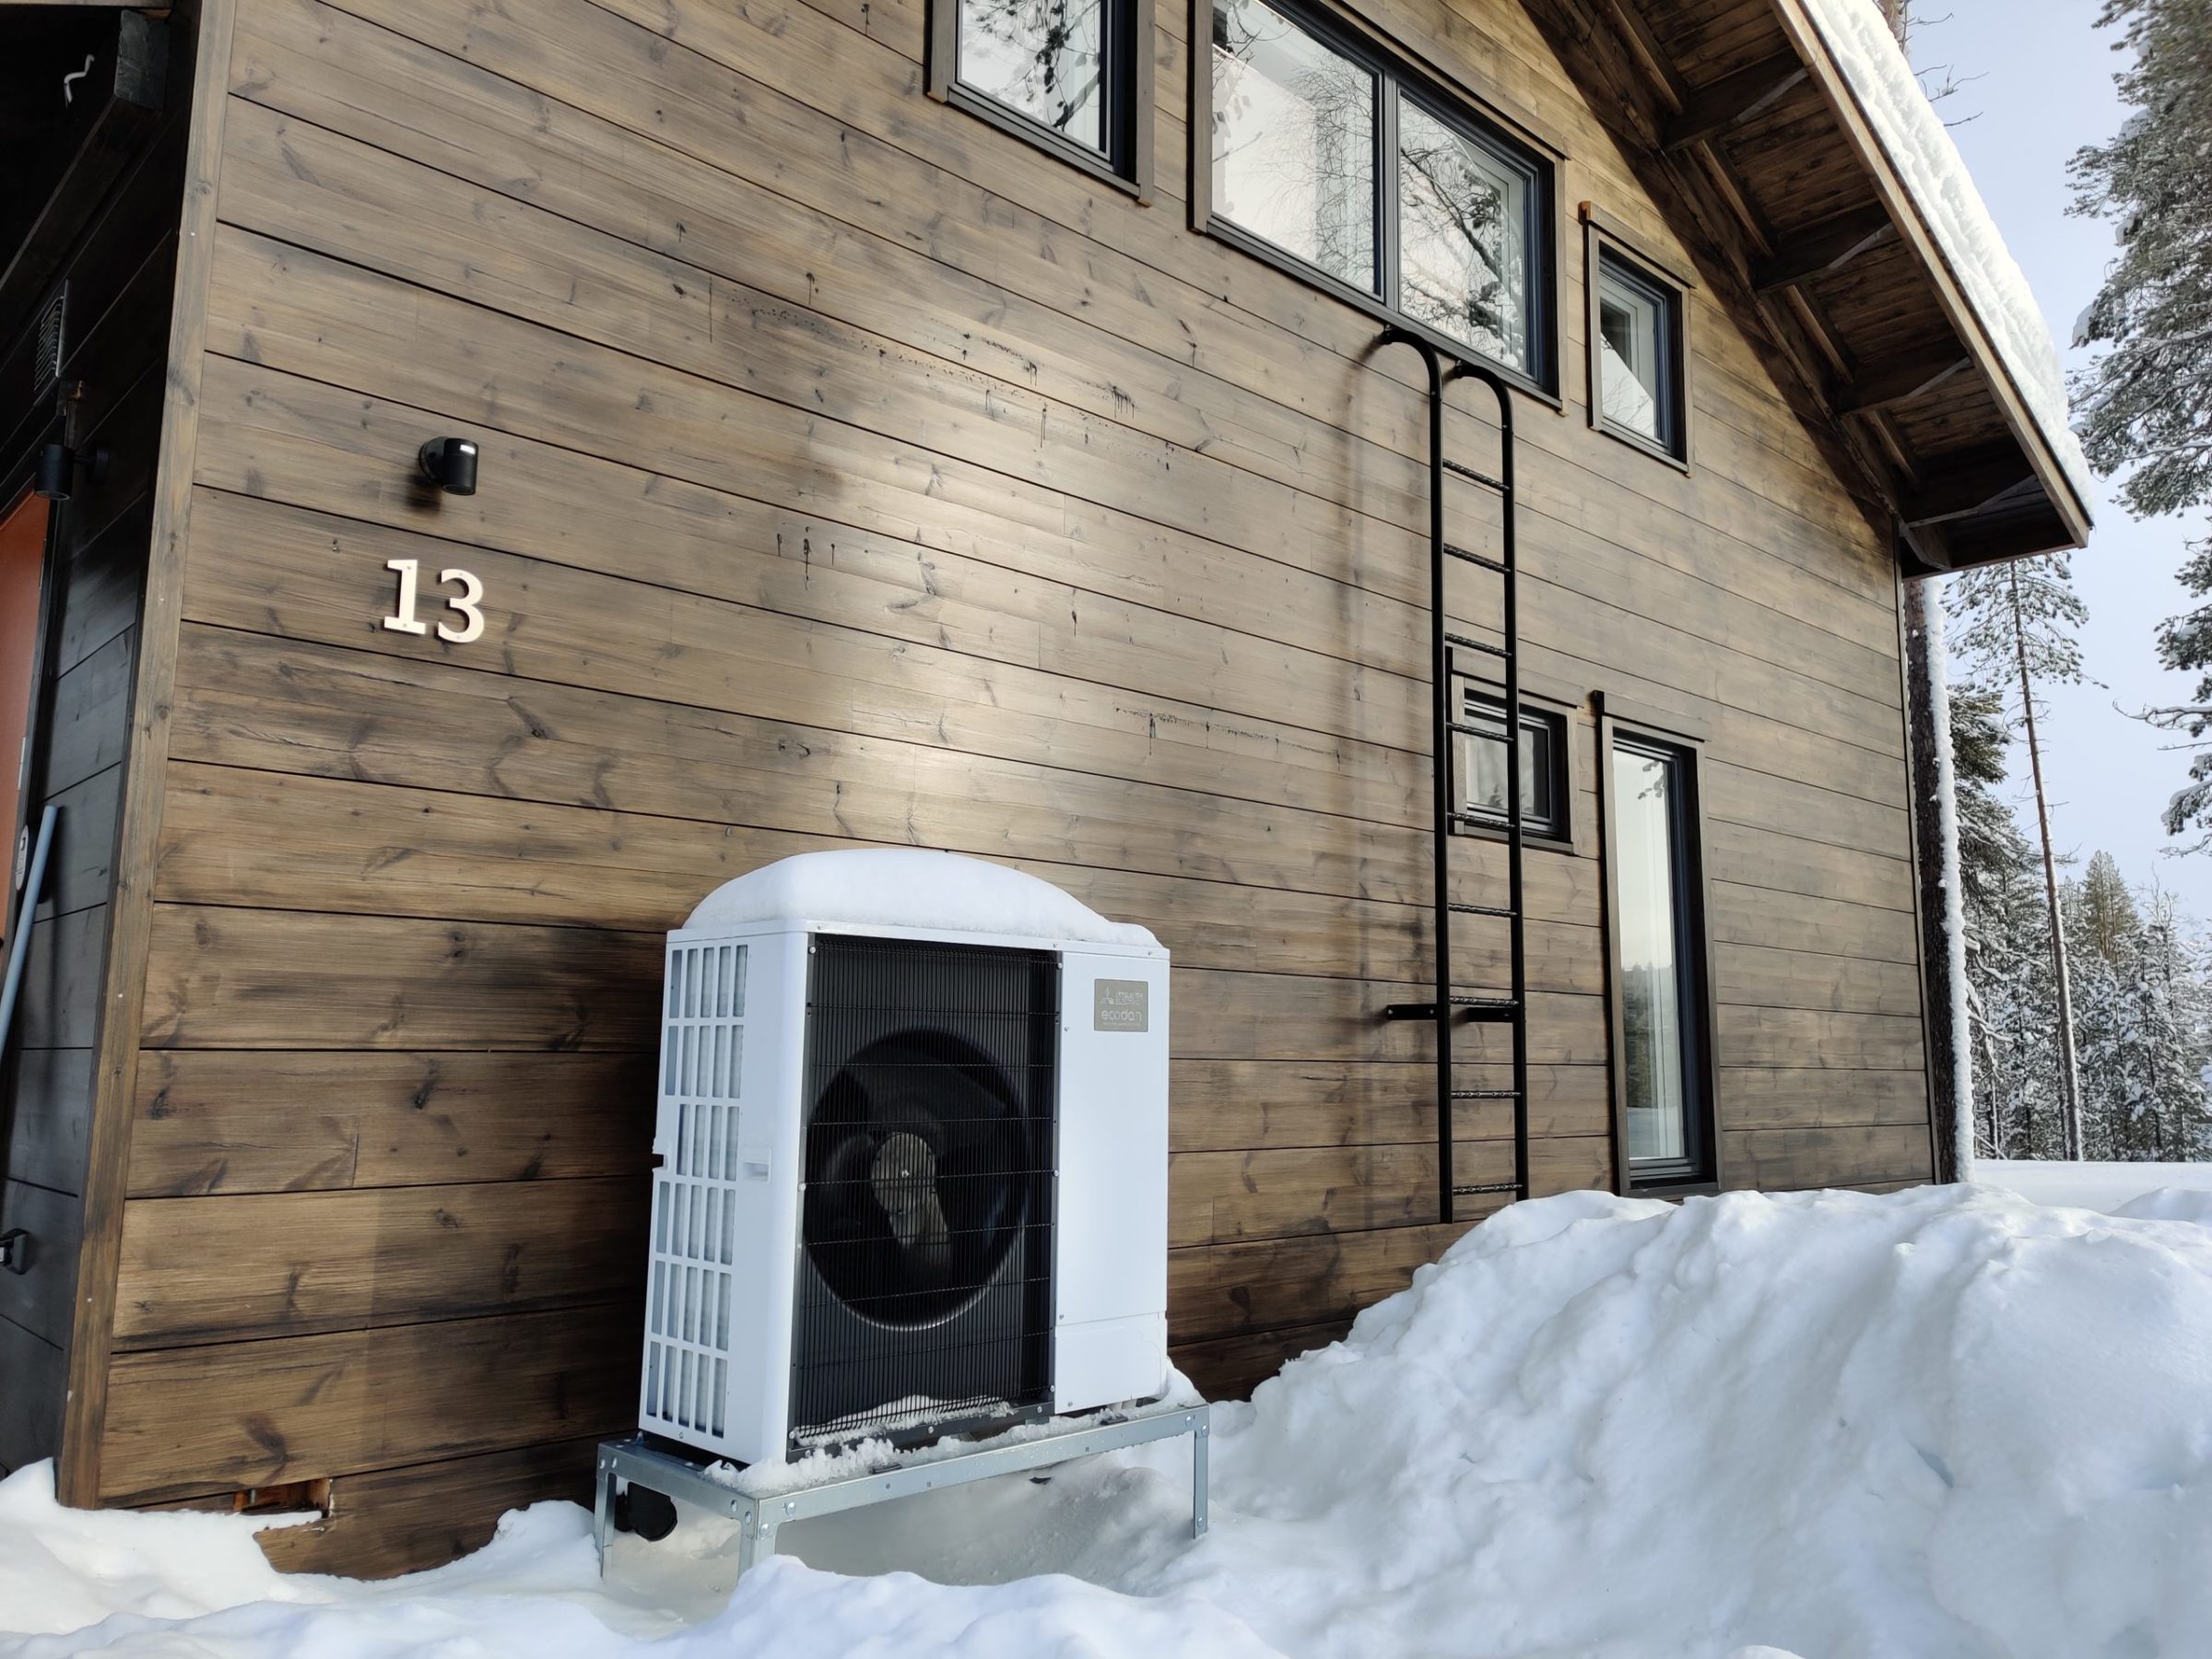 Mitsubishi Electric ilmavesilämpöpumppu tuottaa tehokkaasti lämpöä myös pakkasella. Ecodan-ulkoyksikkö talon seinustalla lumisena talvipäivänä.